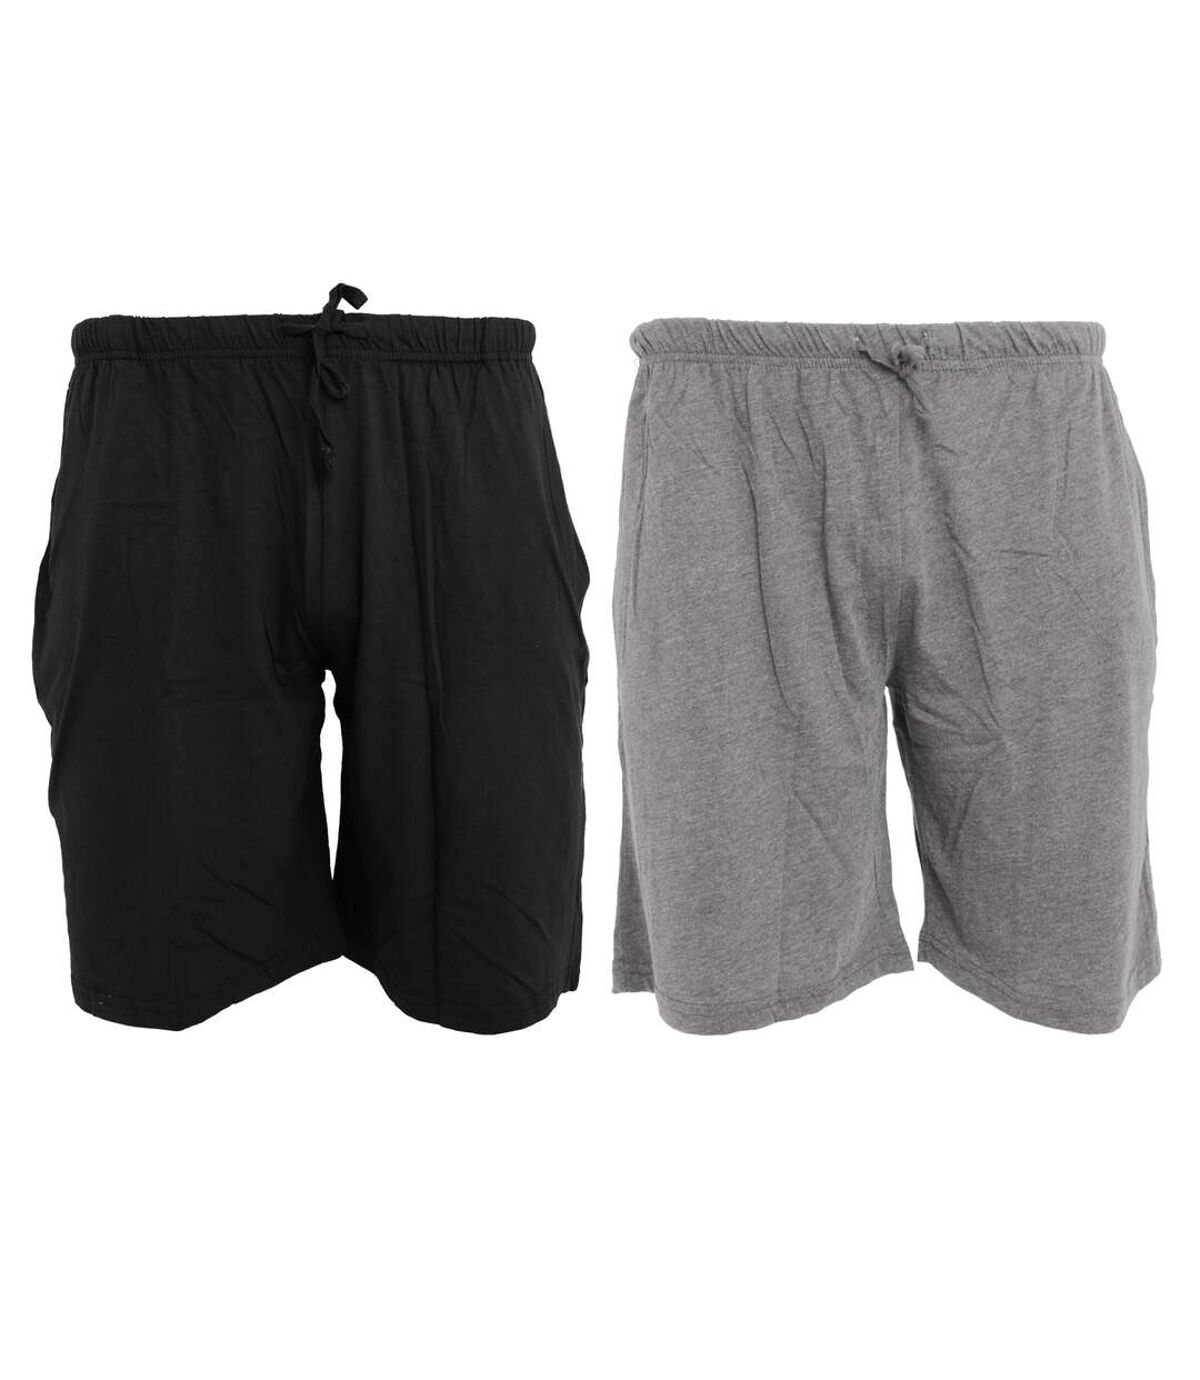 Tom Franks Jersey Lounge Shorts (2 Pack) (Black/Grey)